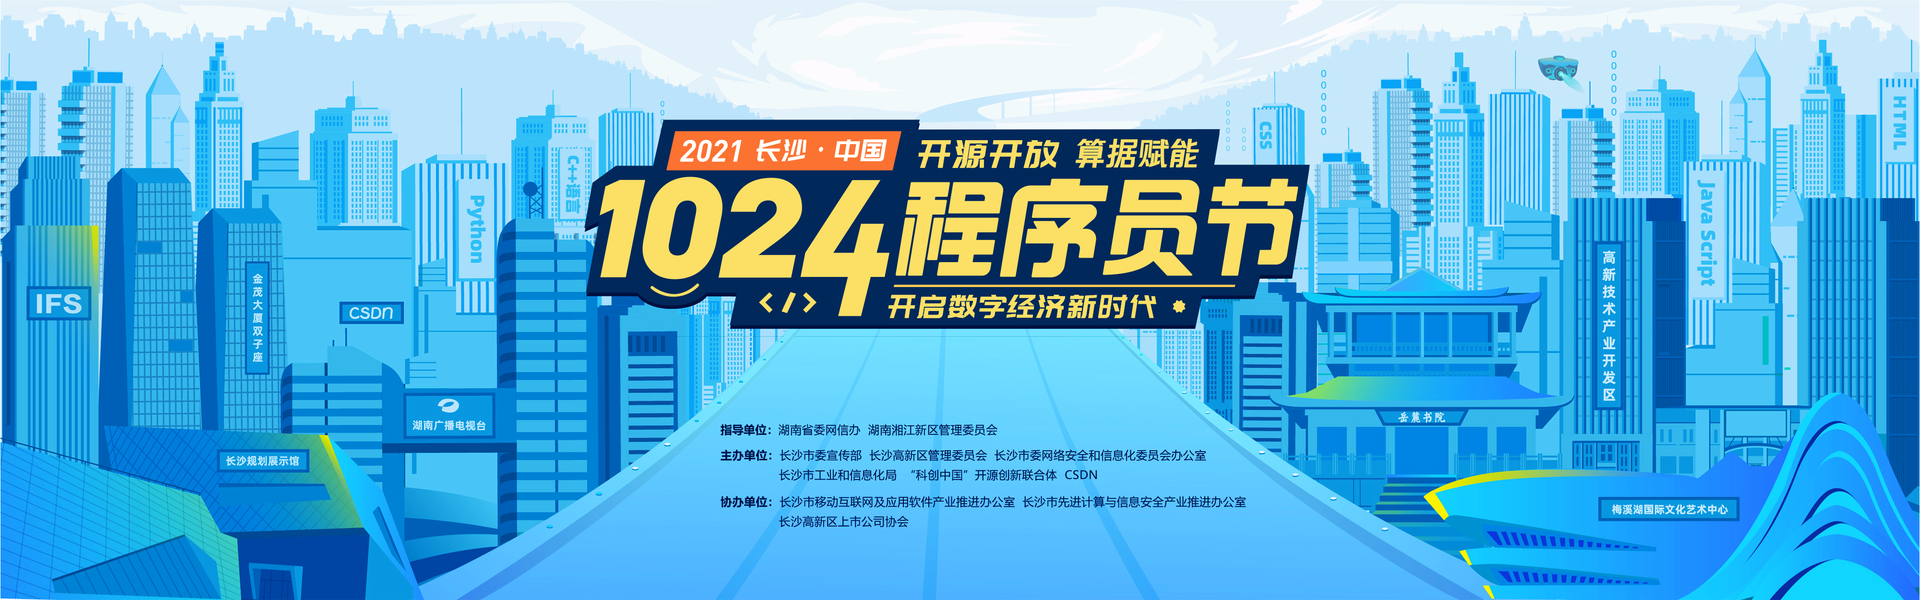 2021 长沙 · 中国 1024 程序员节